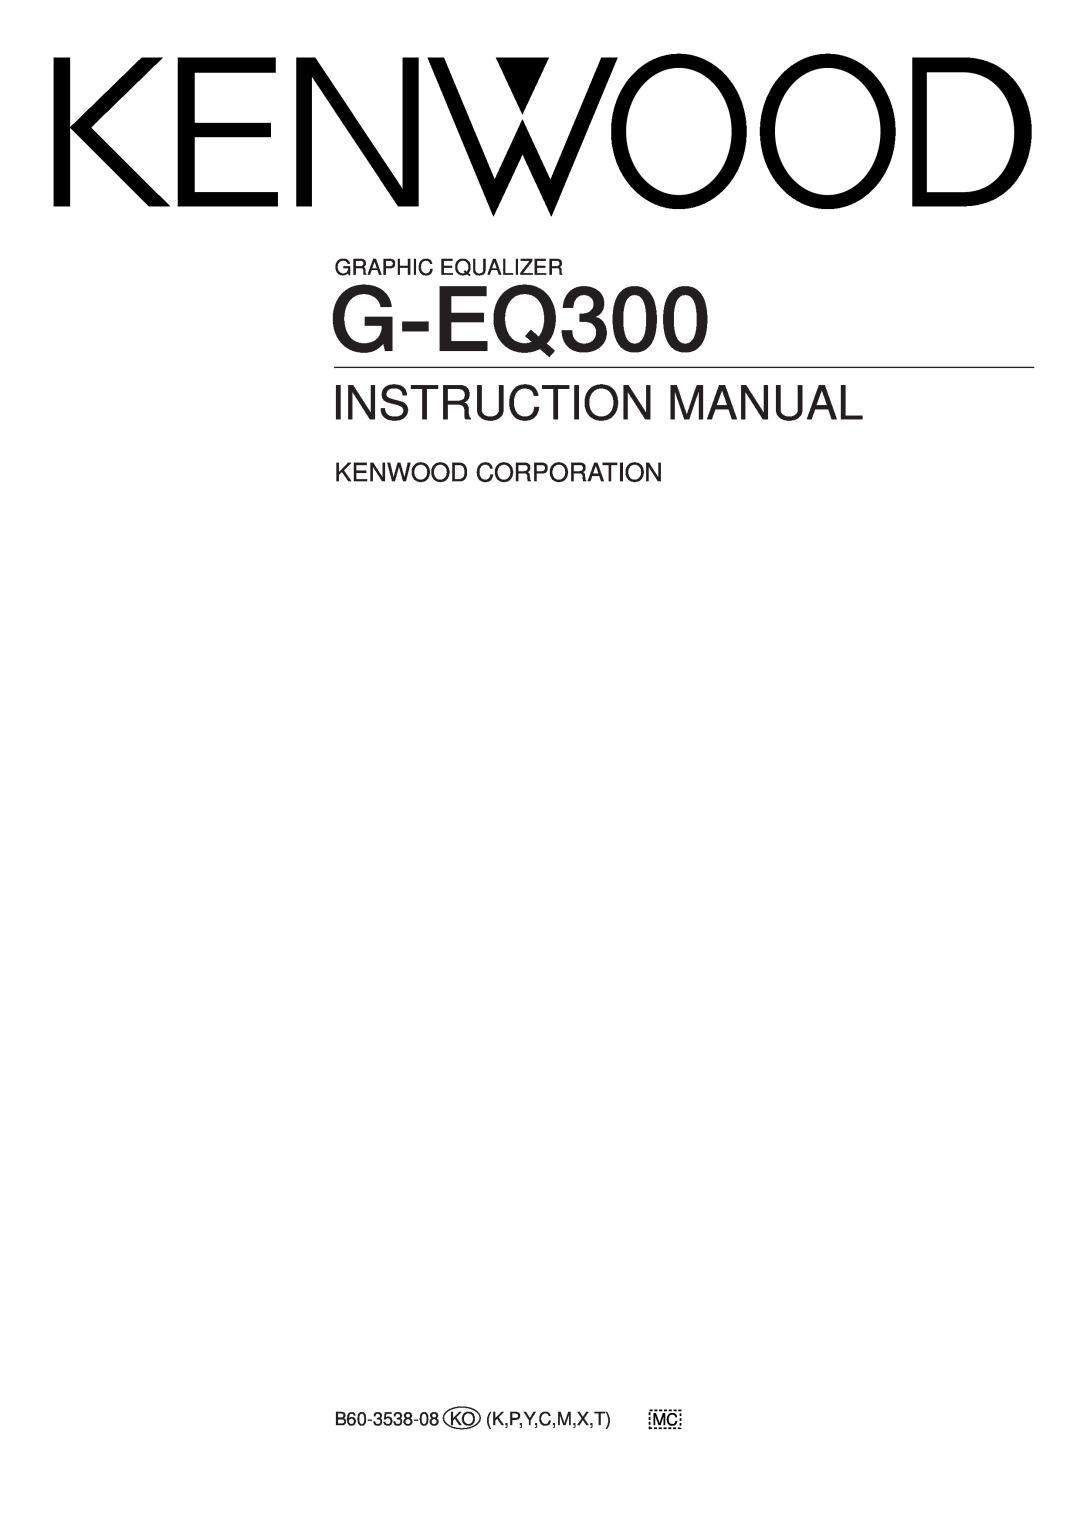 Kenwood G-EQ300 instruction manual Instruction Manual, Kenwood Corporation, Graphic Equalizer 